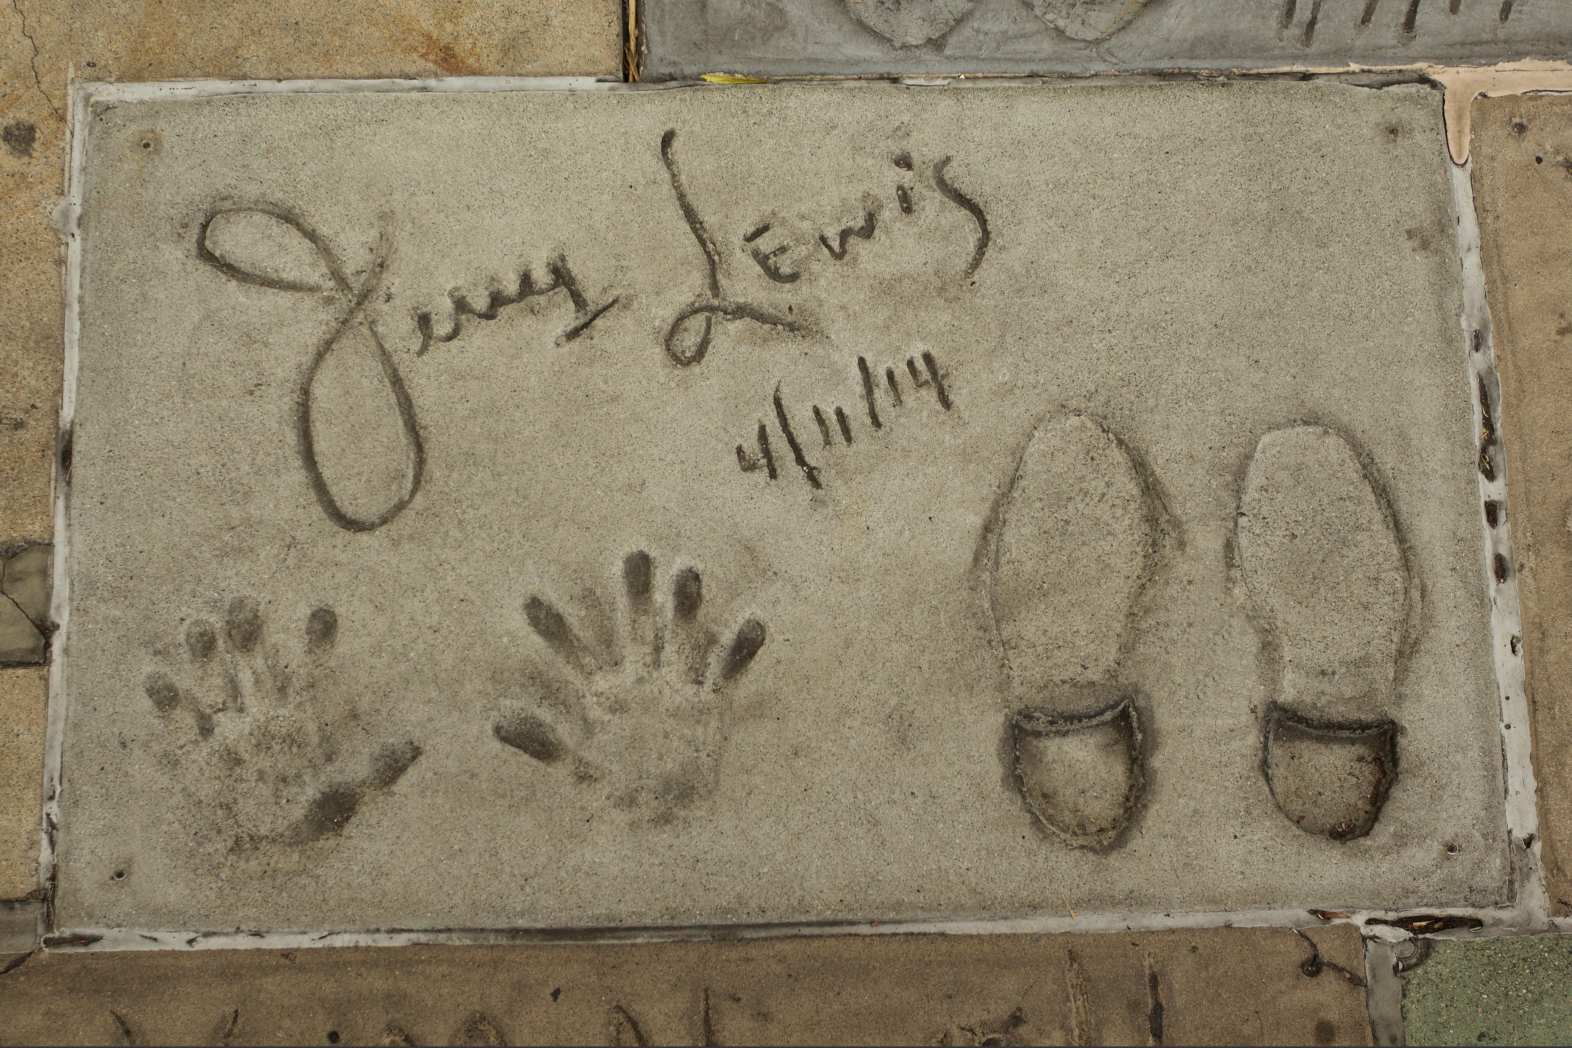 Xusuus-ku-meel-gaar ah ayaa u muuqday majaajiliiste dambe, jilaa iyo majaajiliiste halyeeyga ah Jerry Lewis oo ku hareeraysan daabacaadda gacanta iyo cagihiisa ee Hollywood Walk of Fame ee Los Angeles markii uu dhintay 2017.